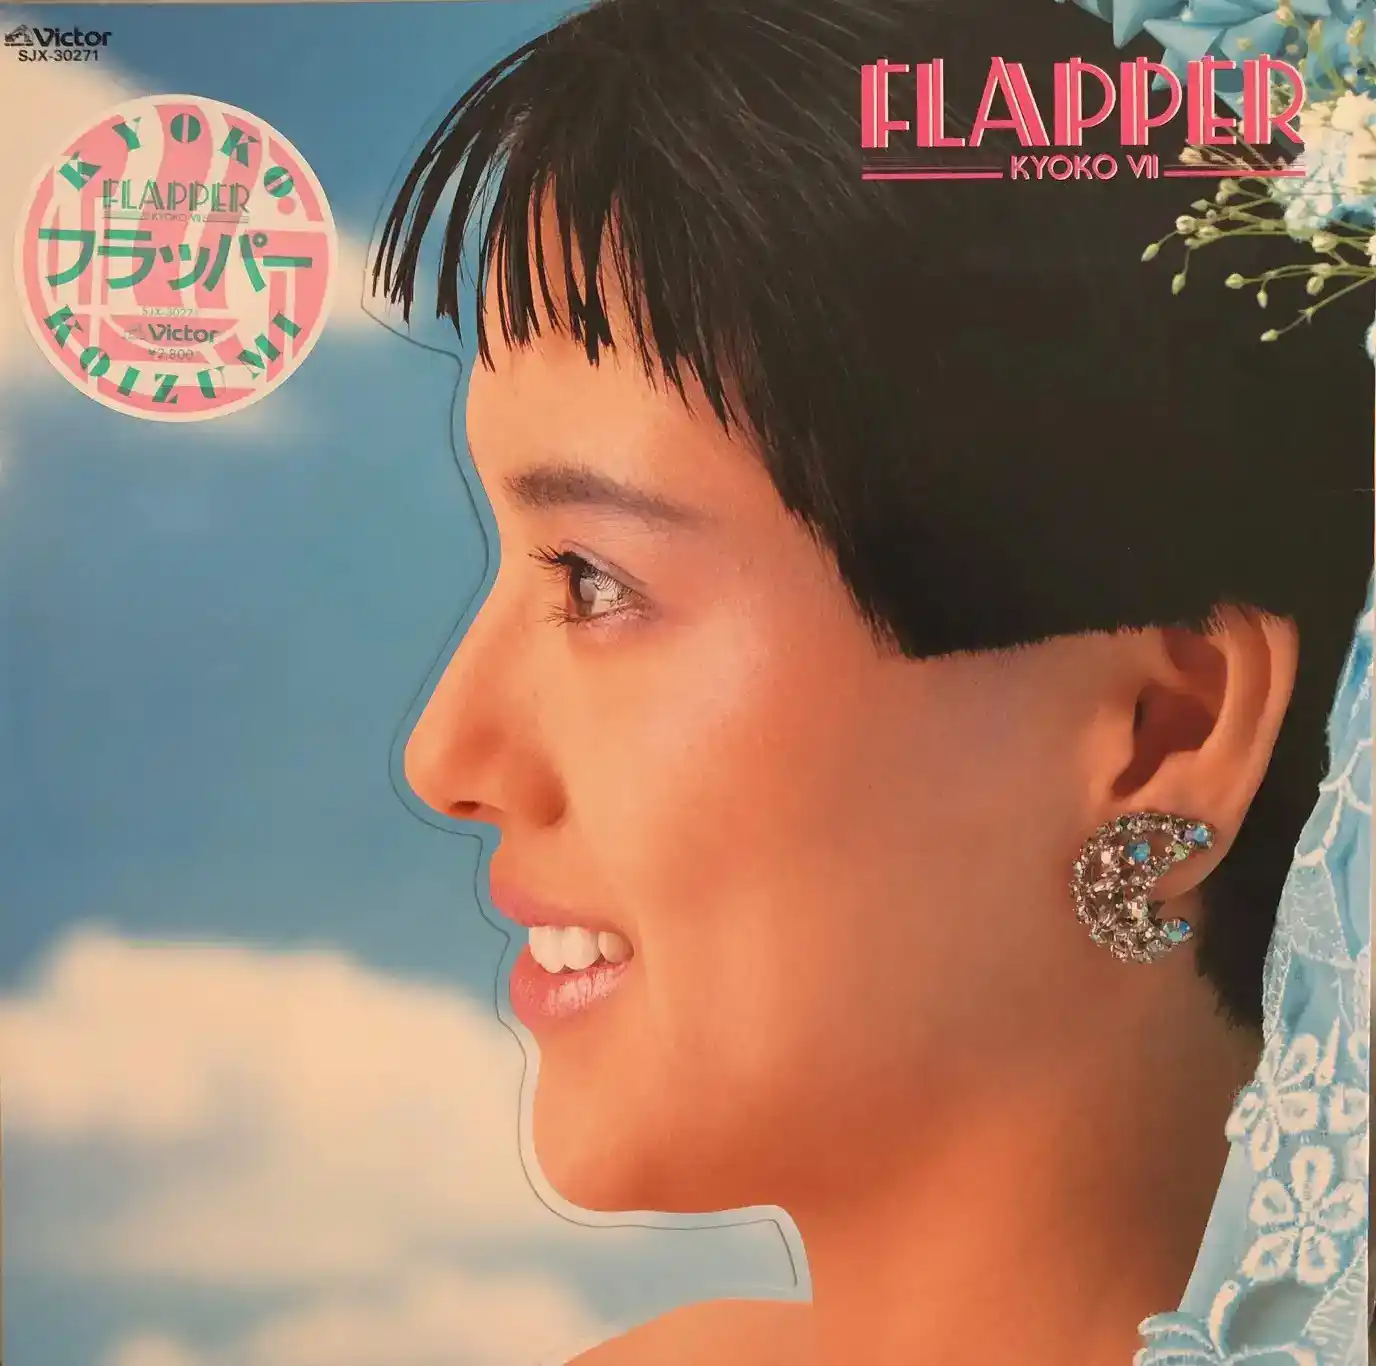 小泉今日子 / FLAPPERのアナログレコードジャケット (準備中)